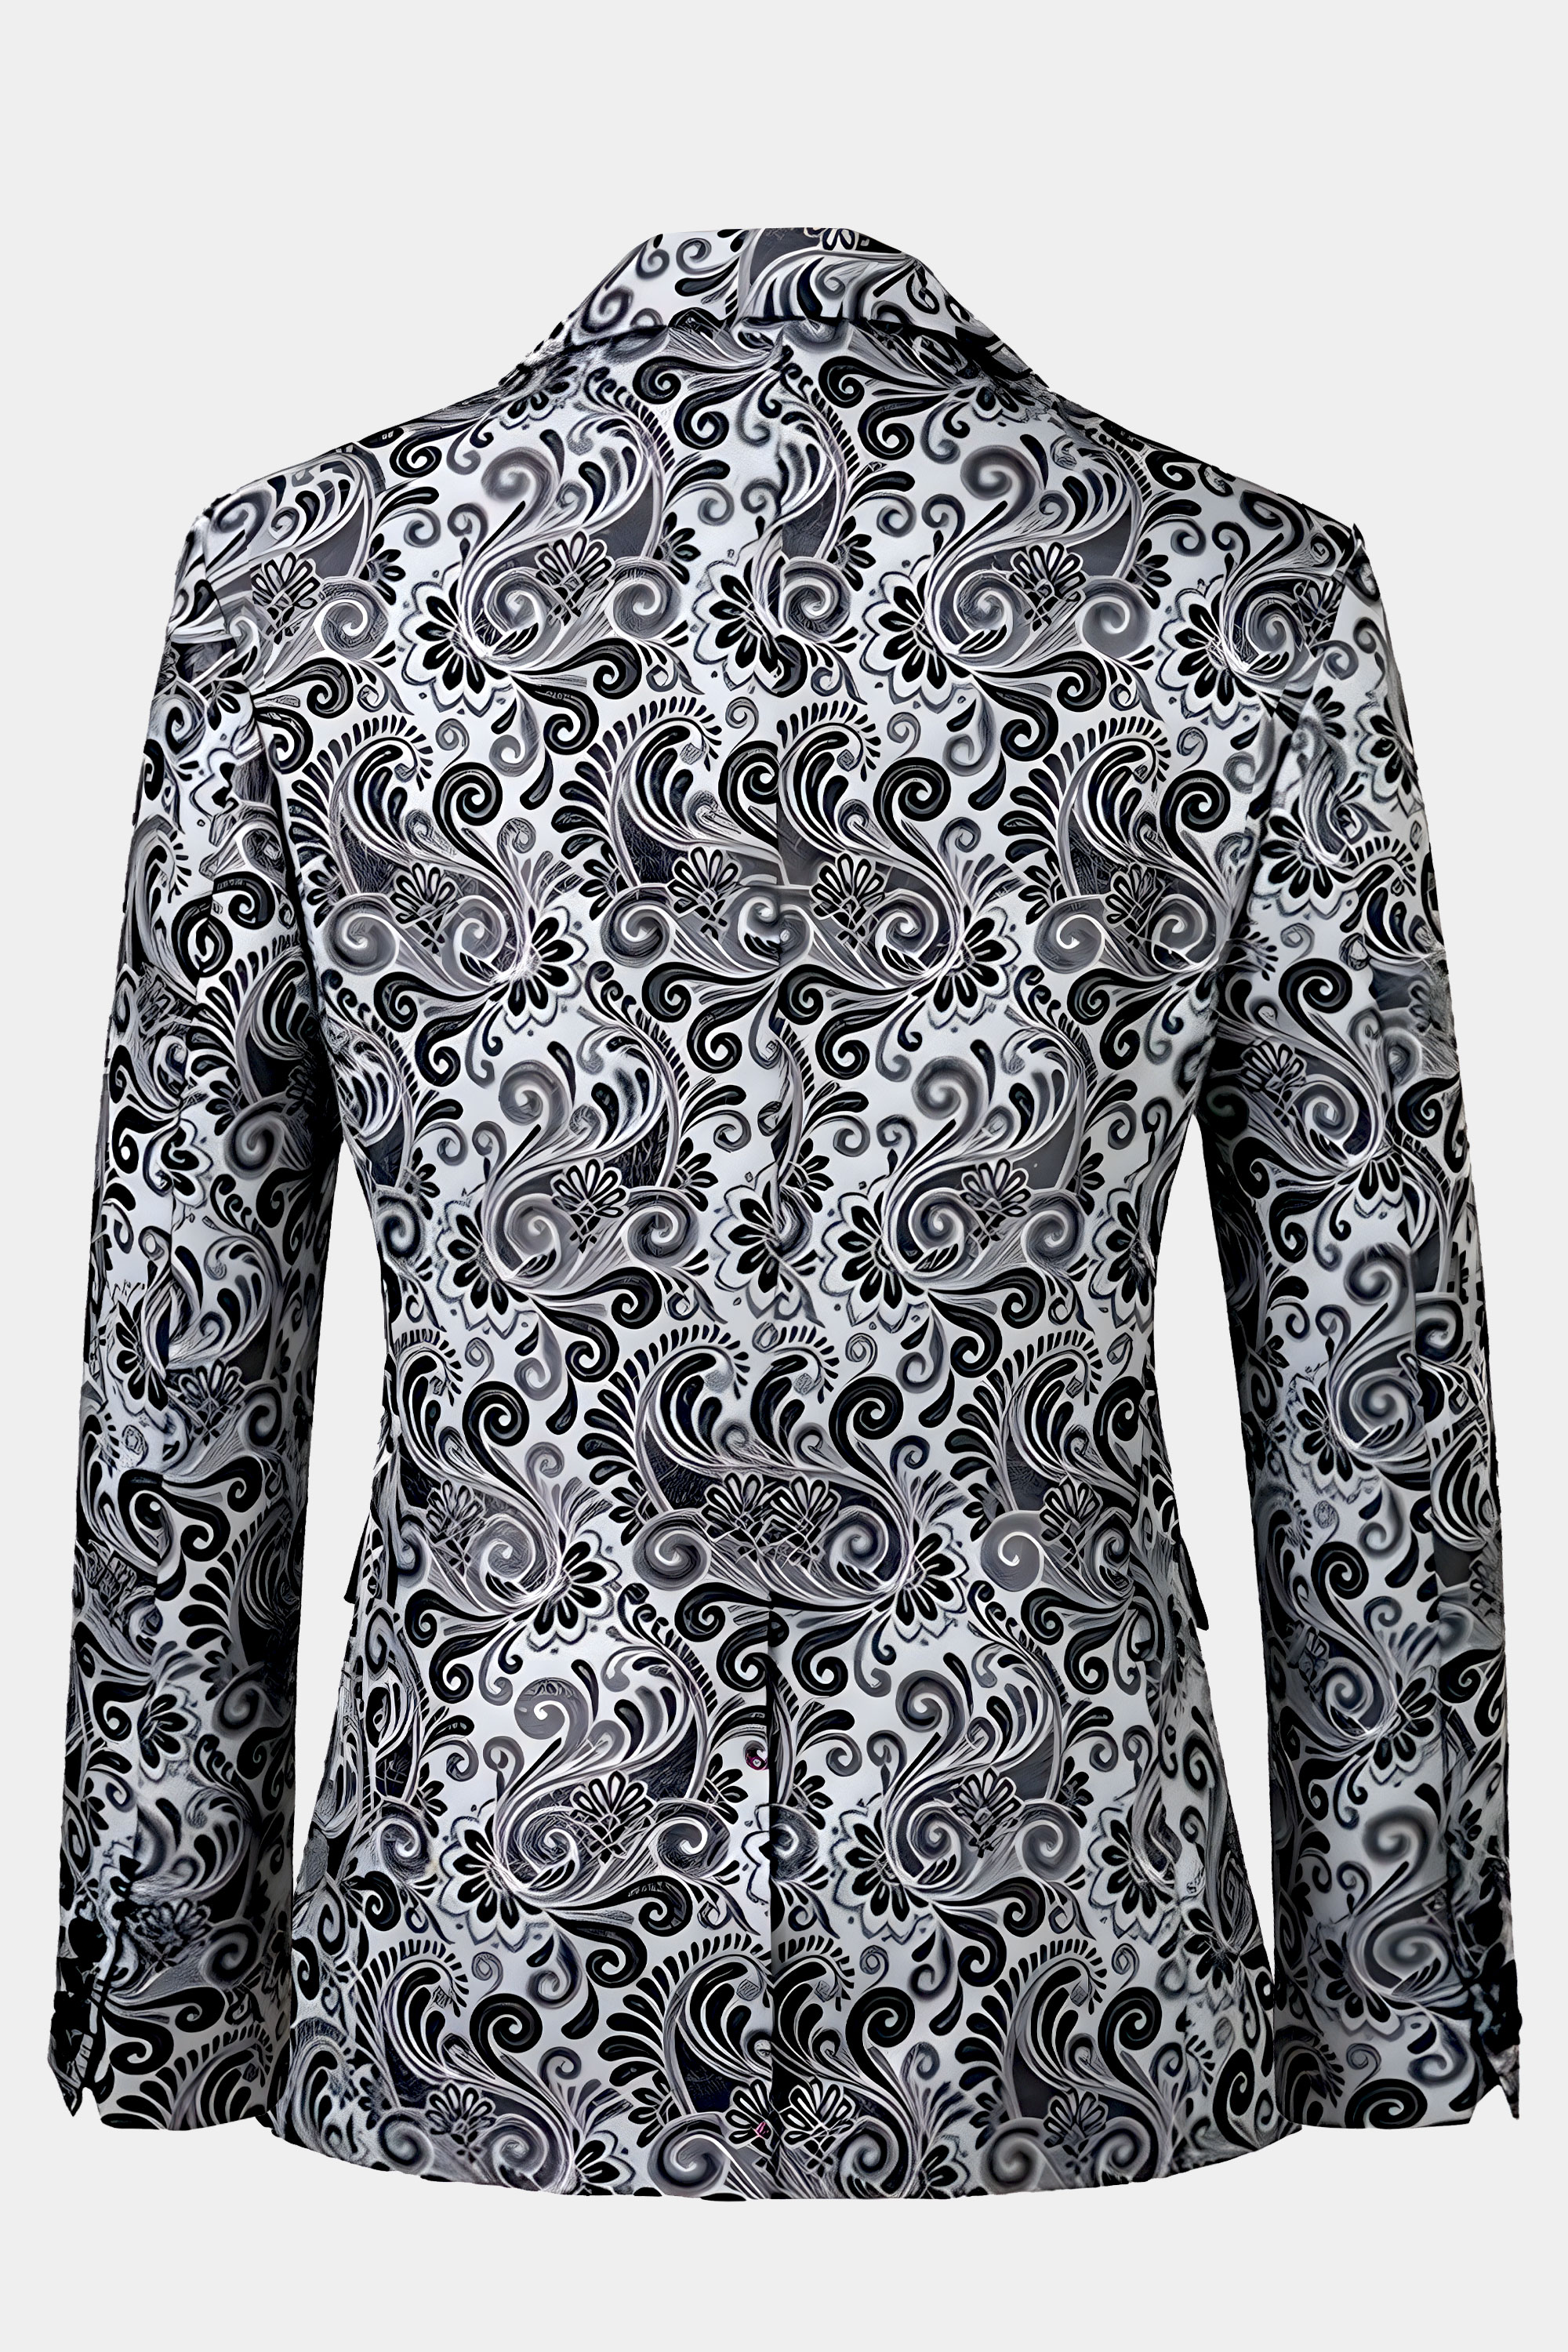 Gray-Paisley-Tuxedo-Jacket-from-Gentlemansguru.com